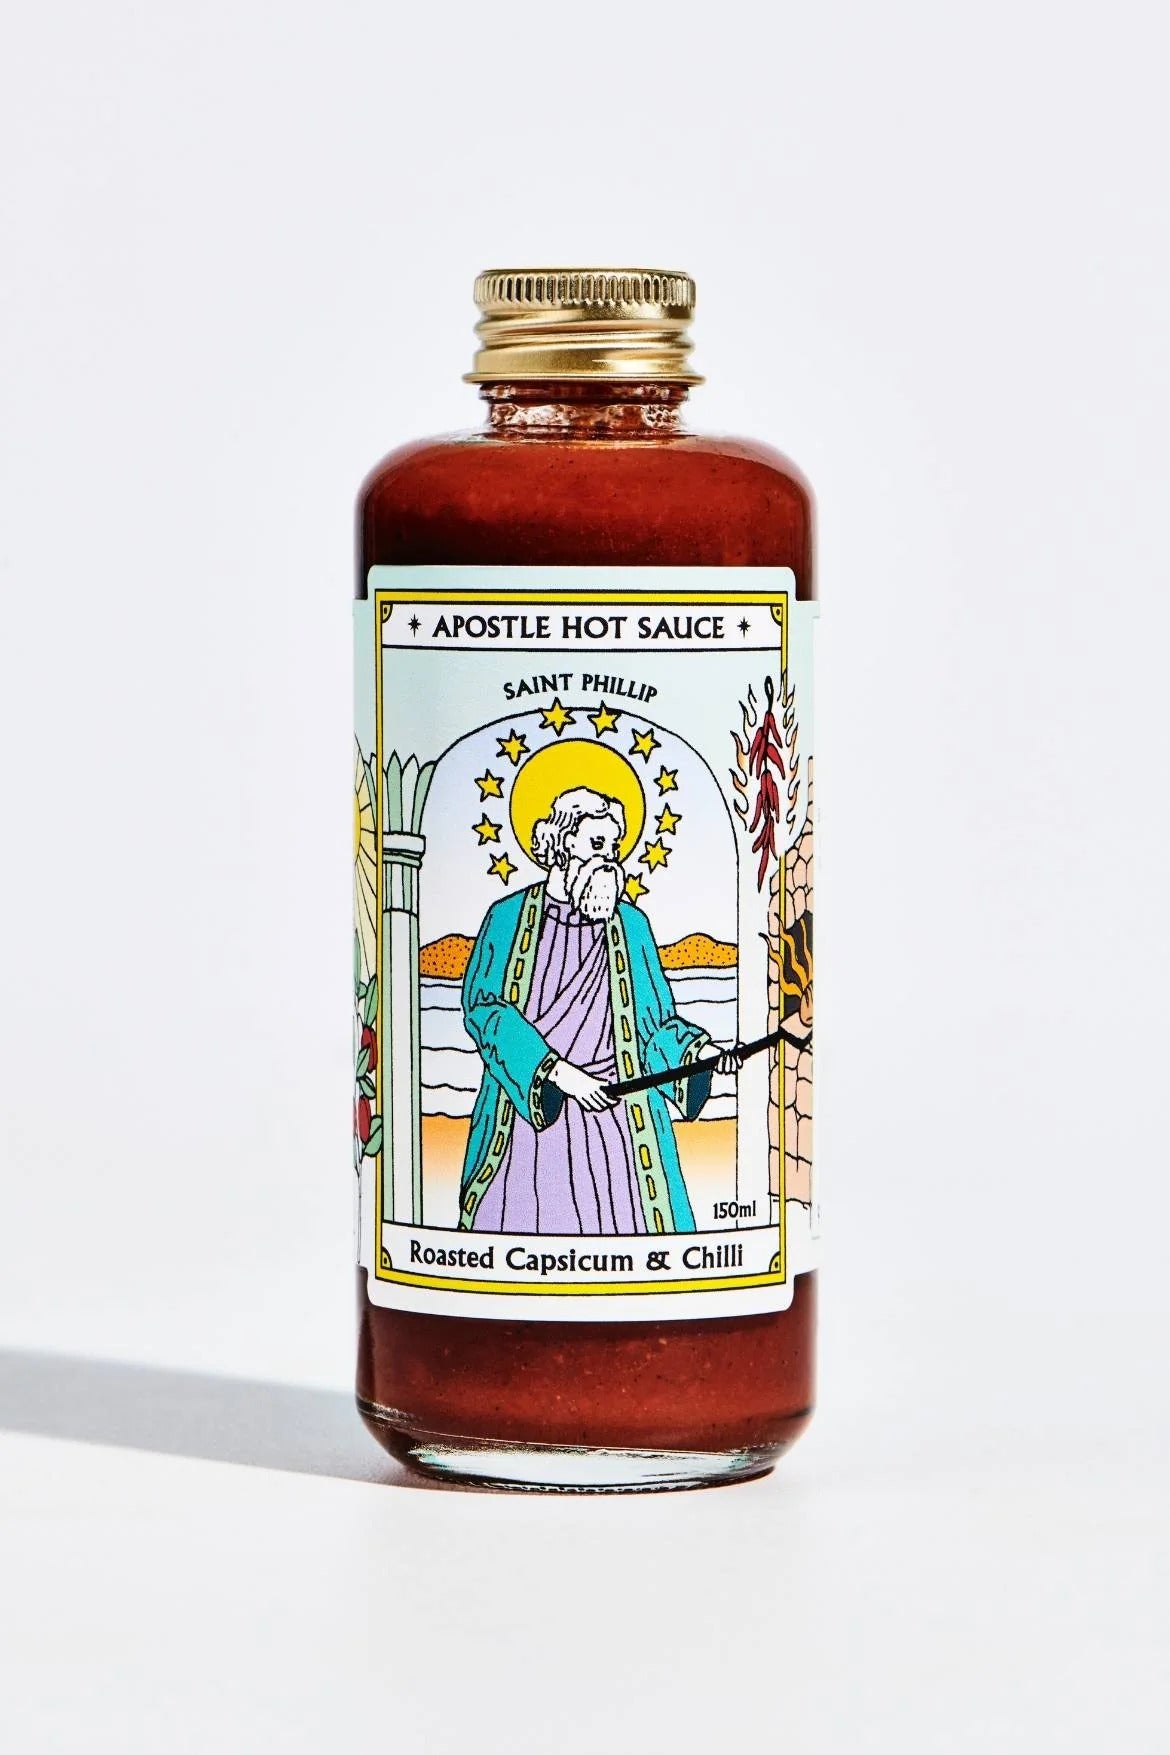 Apostle Hot Sauce - St. Phillip Roasted Capsicum Chilli